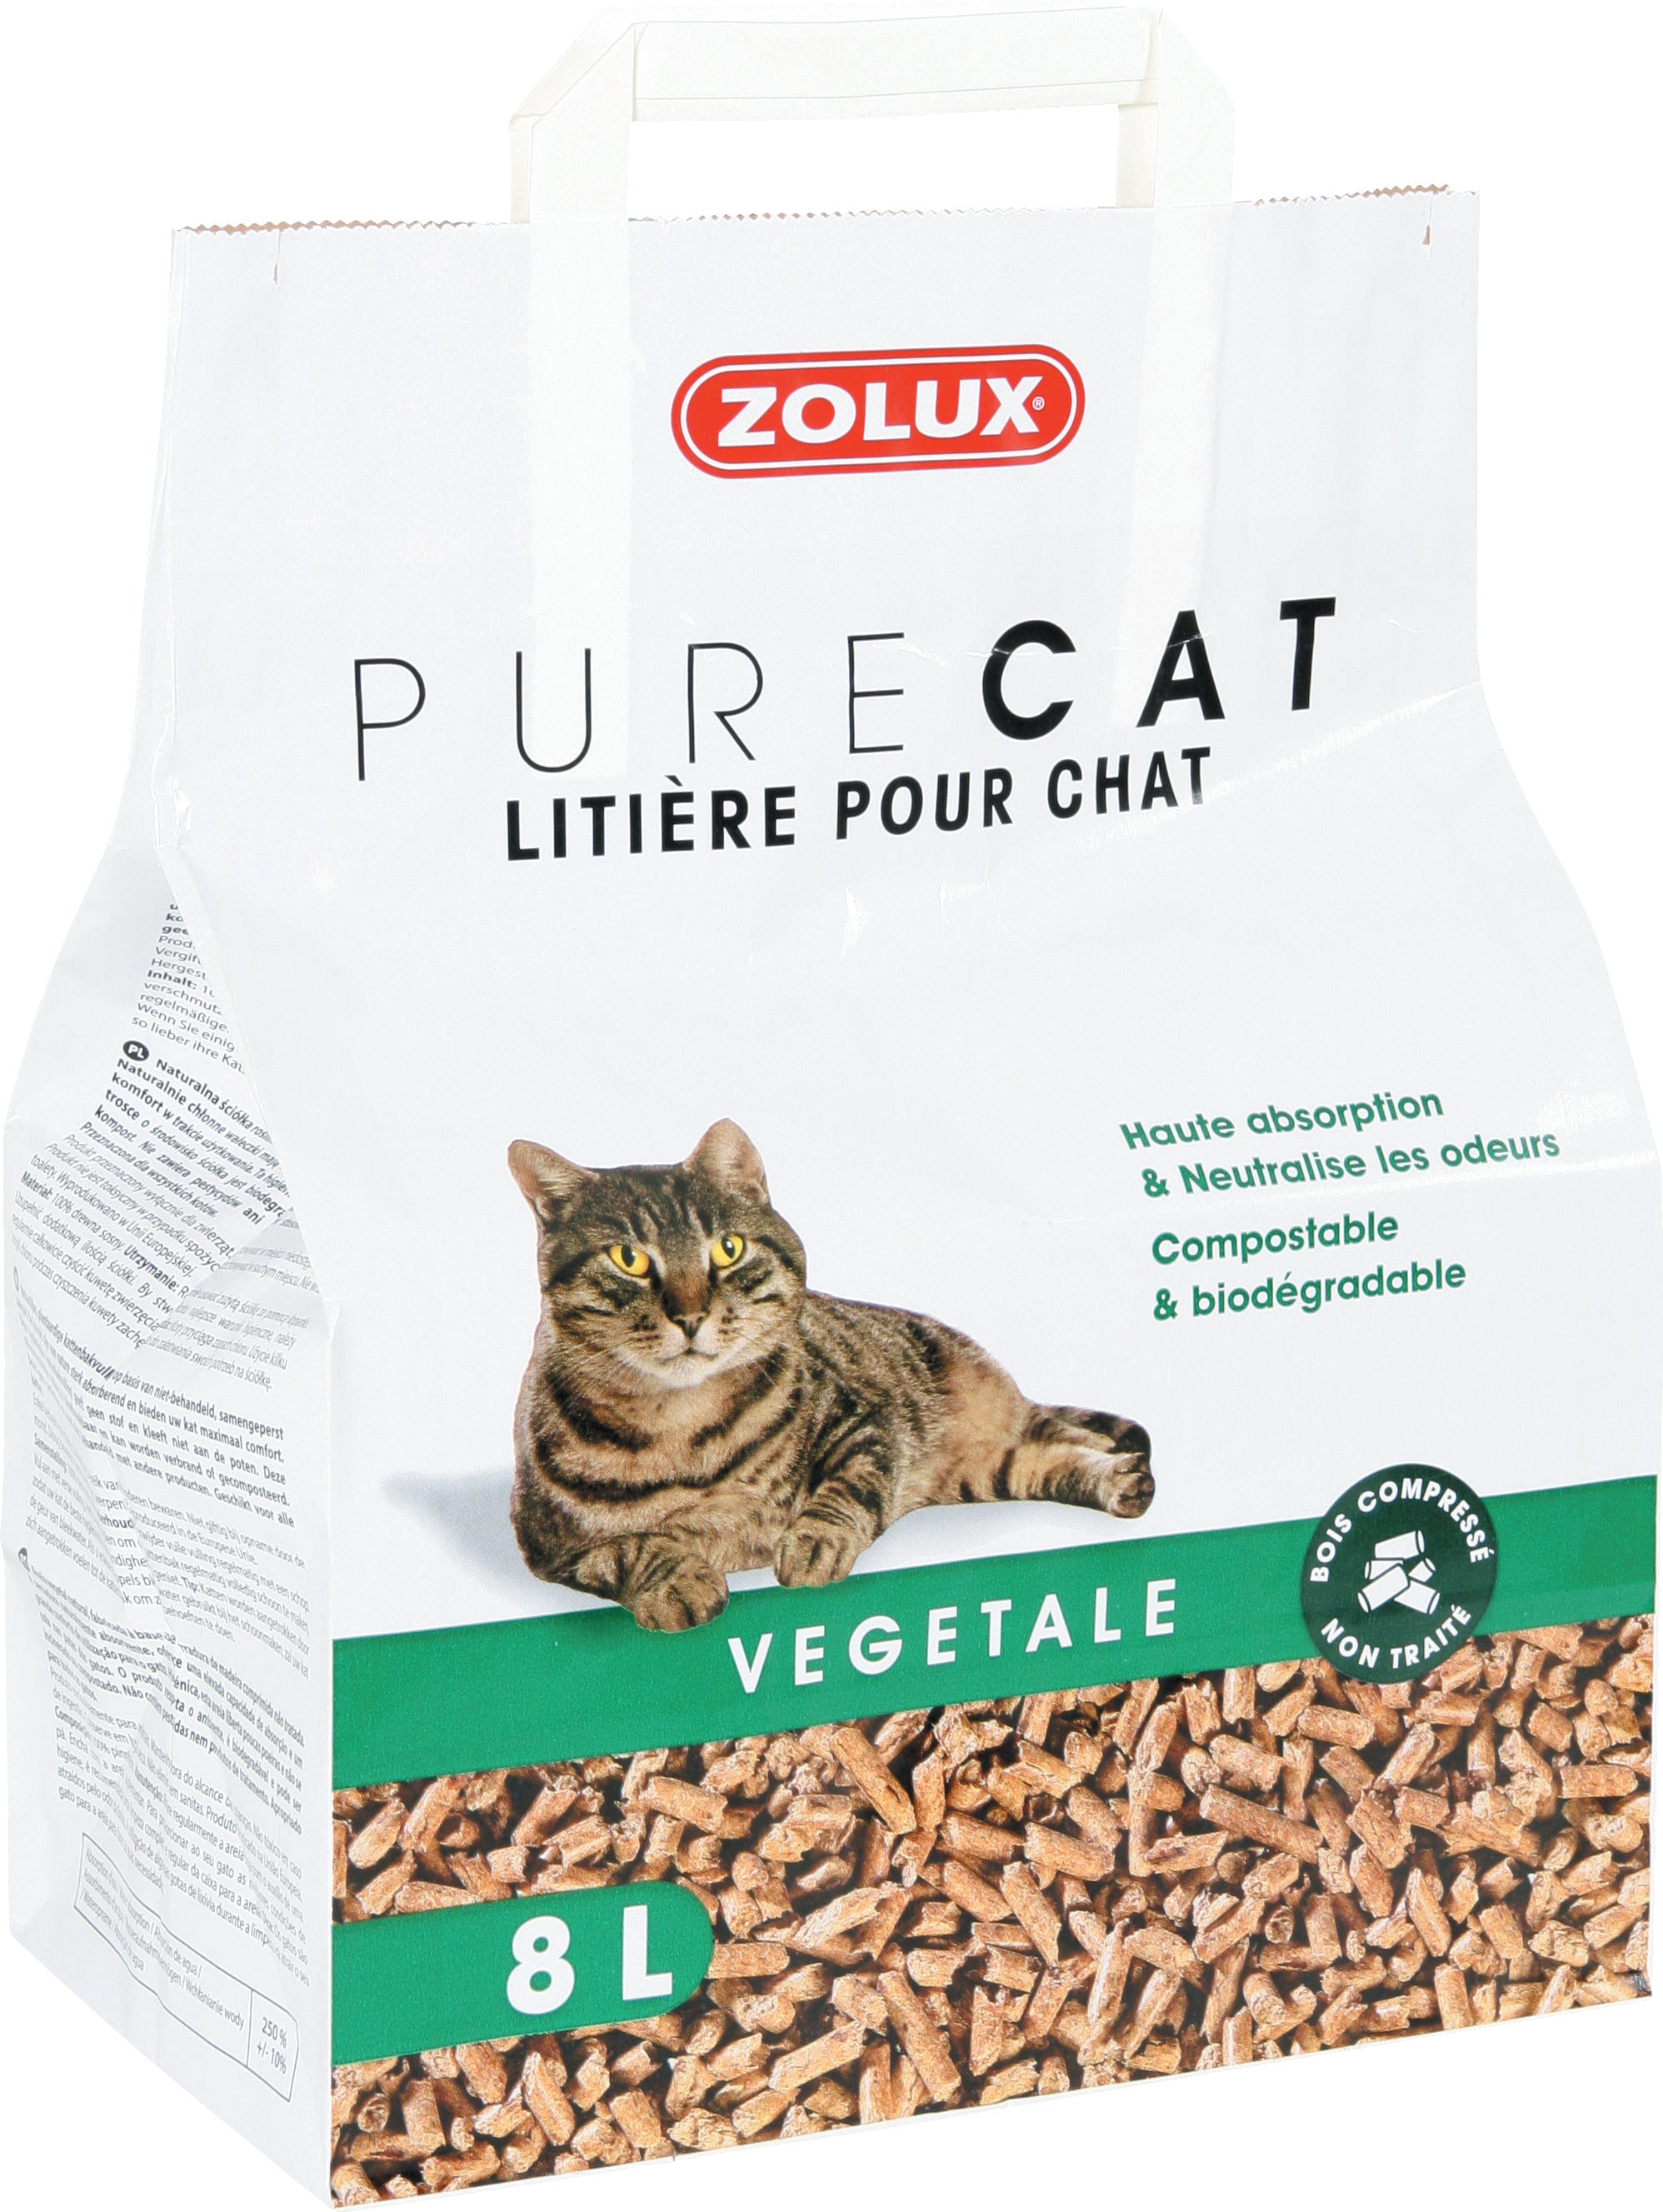 Litière chat PureCat végétale nature de Zolux